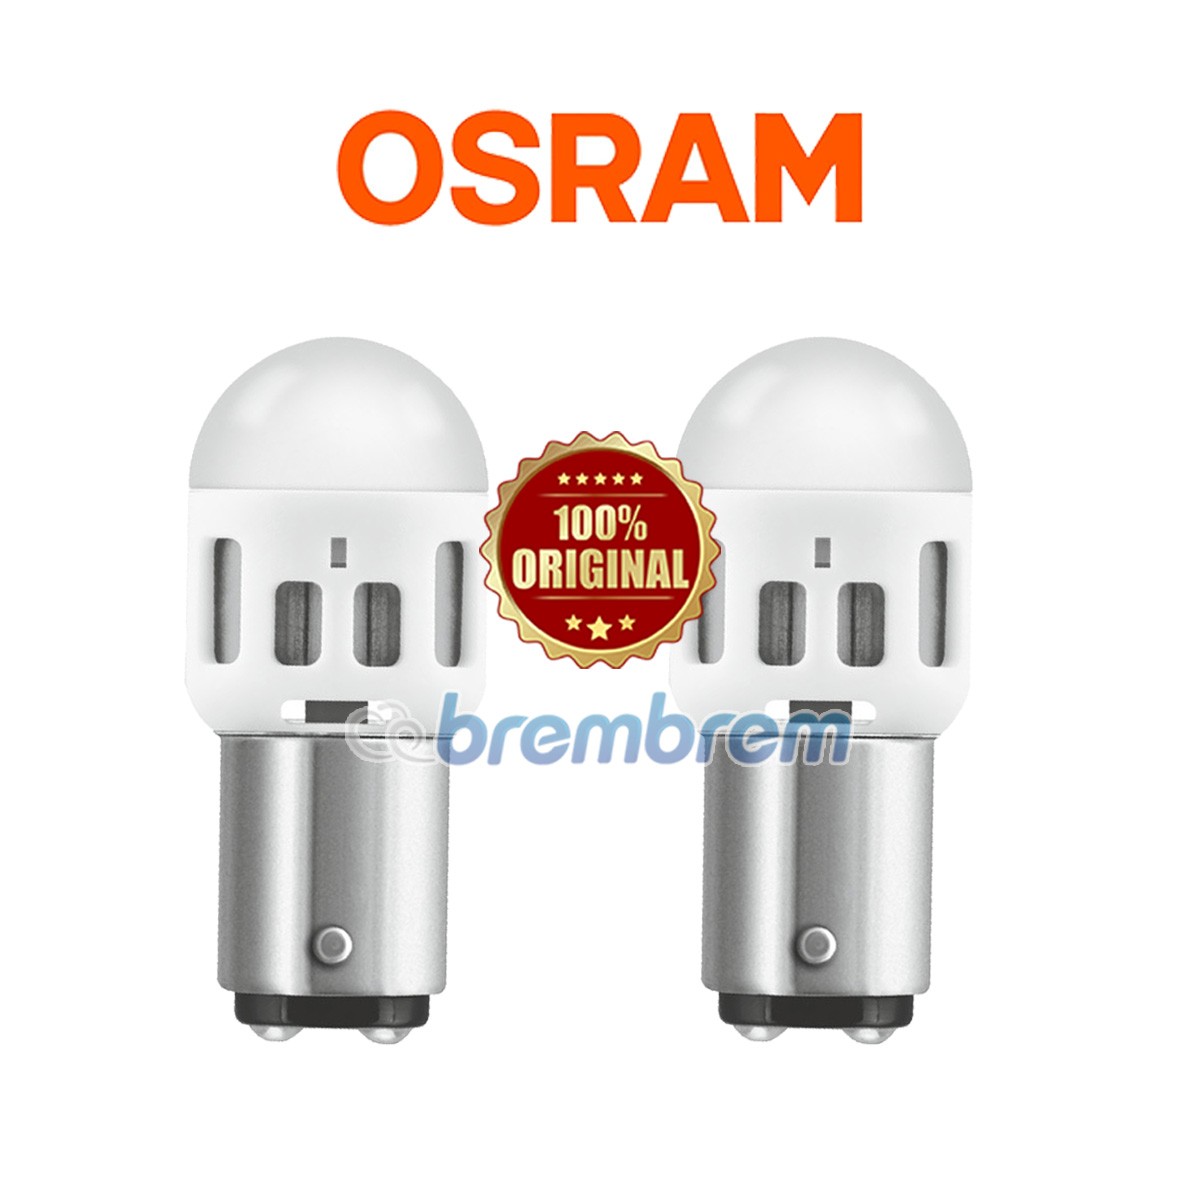 OSRAM RETROFIT 1357 COOL WHITE (6000K) - LAMPU REM LED MOBIL